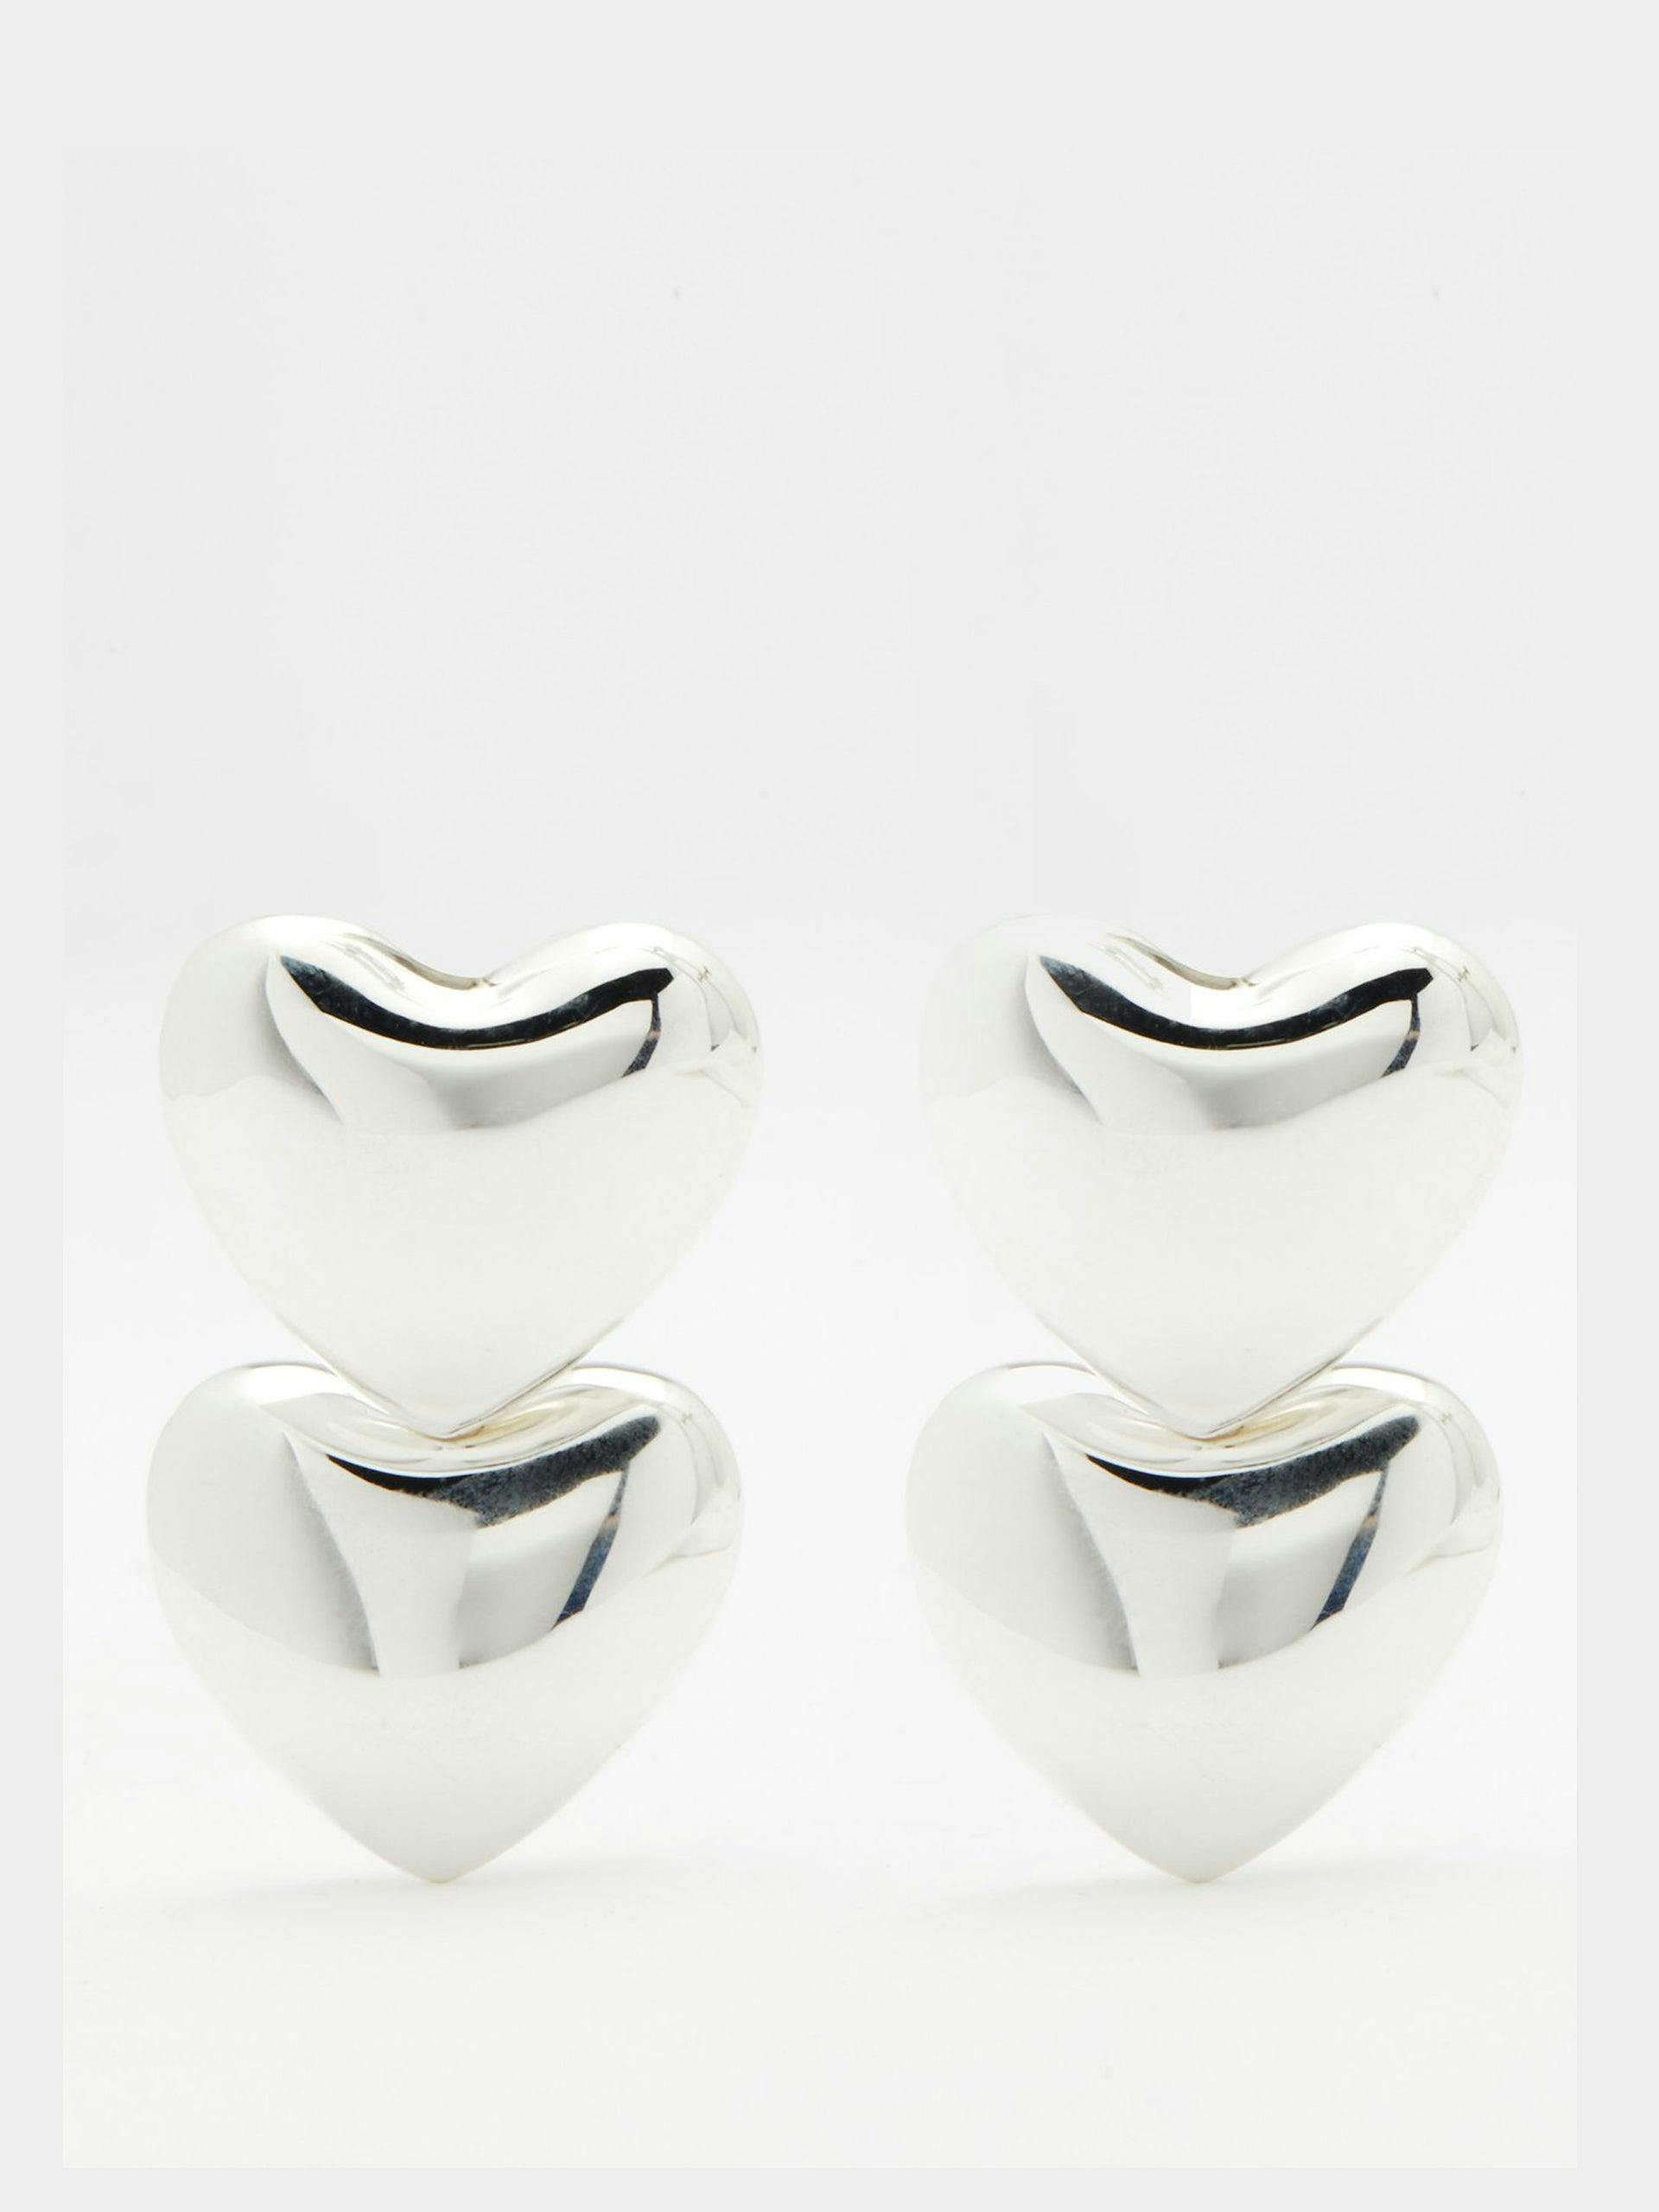 Double voluptuous heart sterling-silver earrings